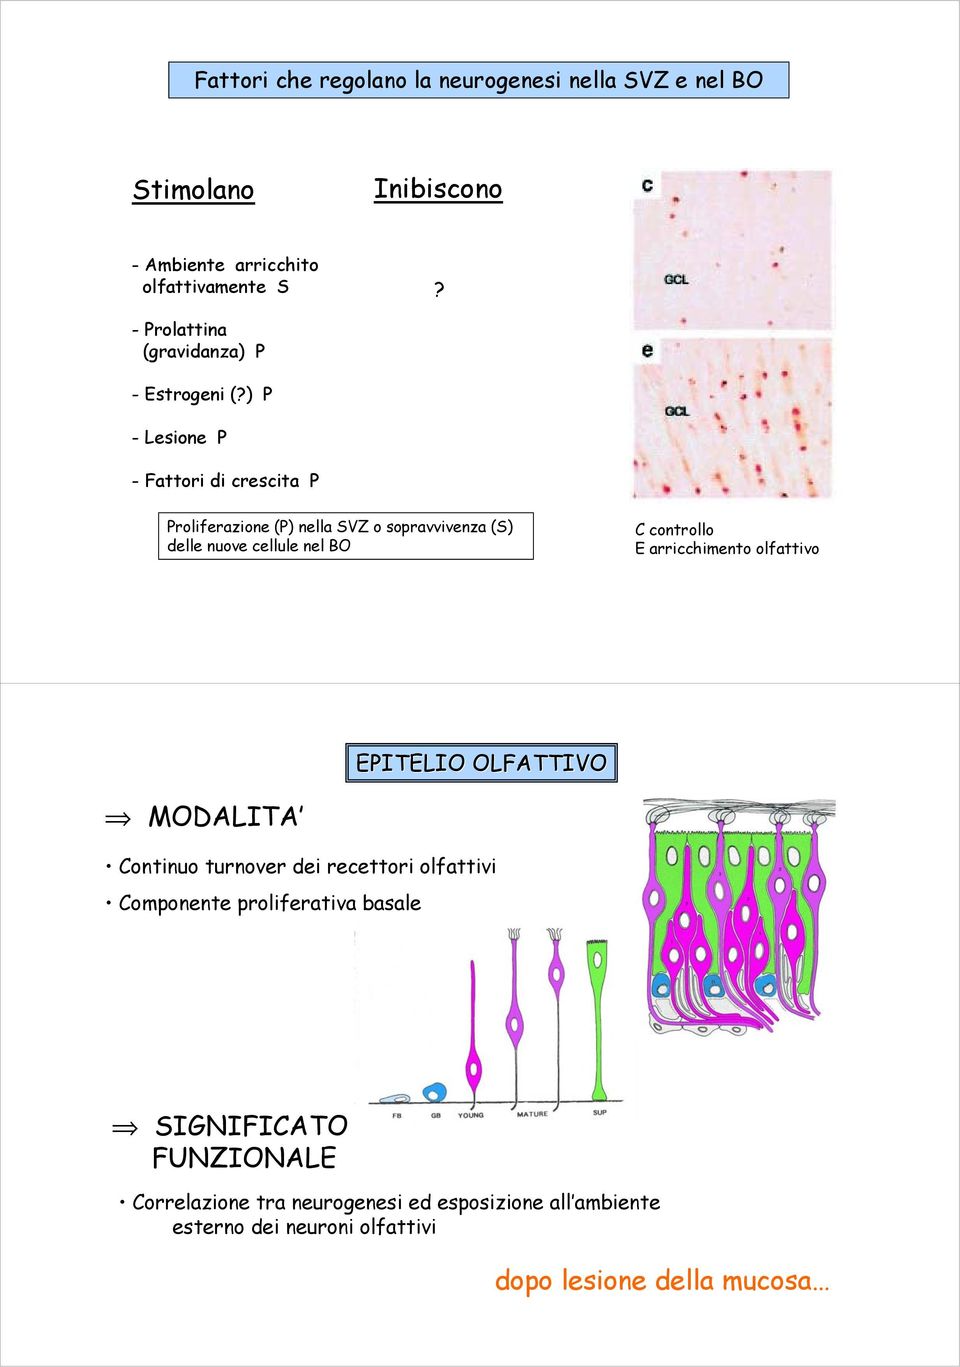 ) P -Lesione P - Fattori di crescita P Proliferazione (P) nella SVZ o sopravvivenza (S) delle nuove cellule nel BO C controllo E